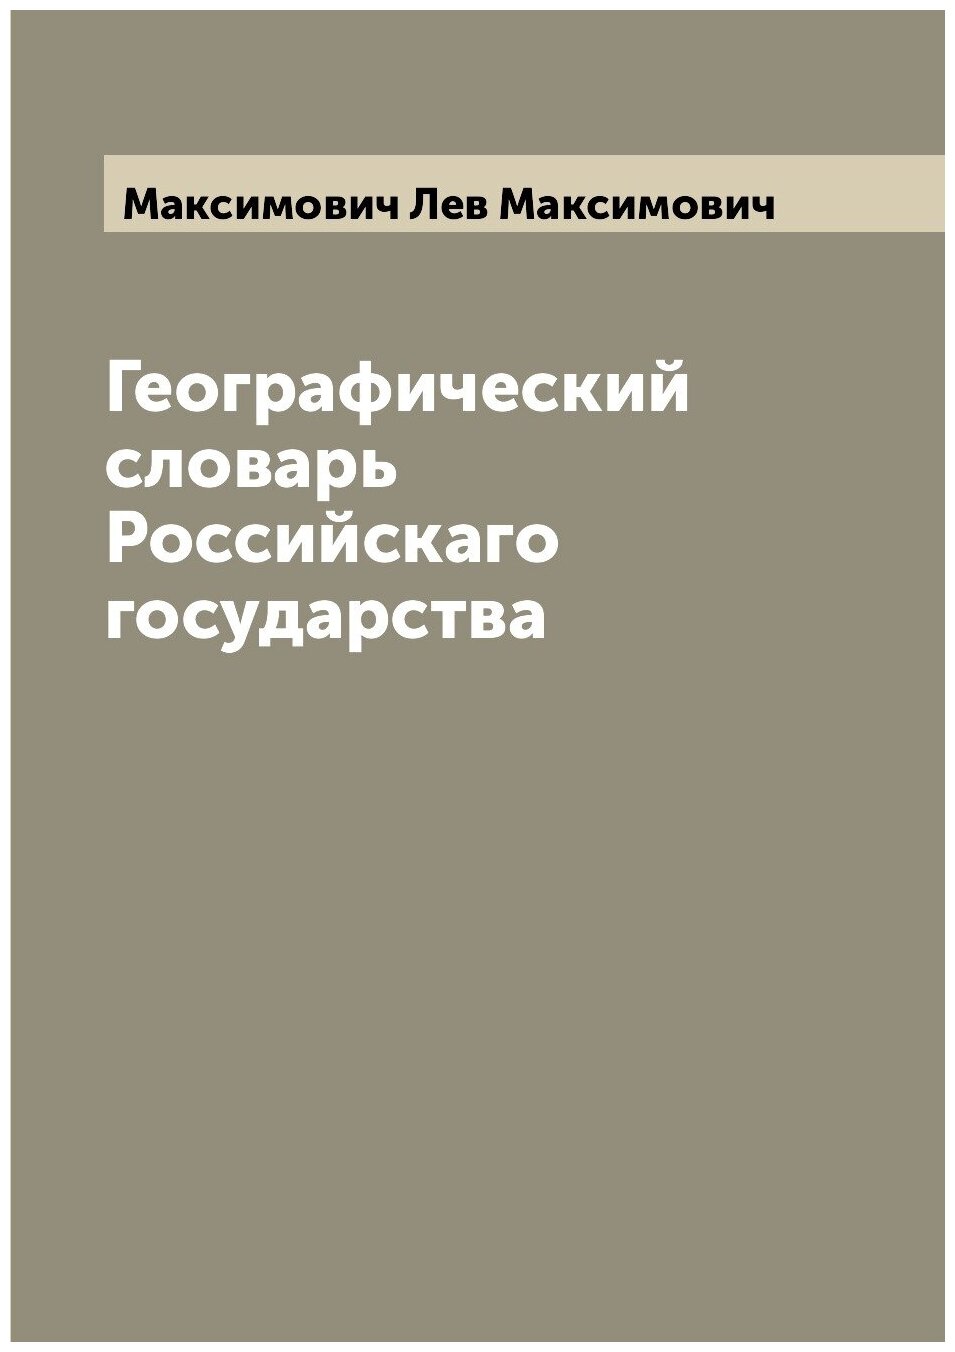 Географический словарь Российскаго государства